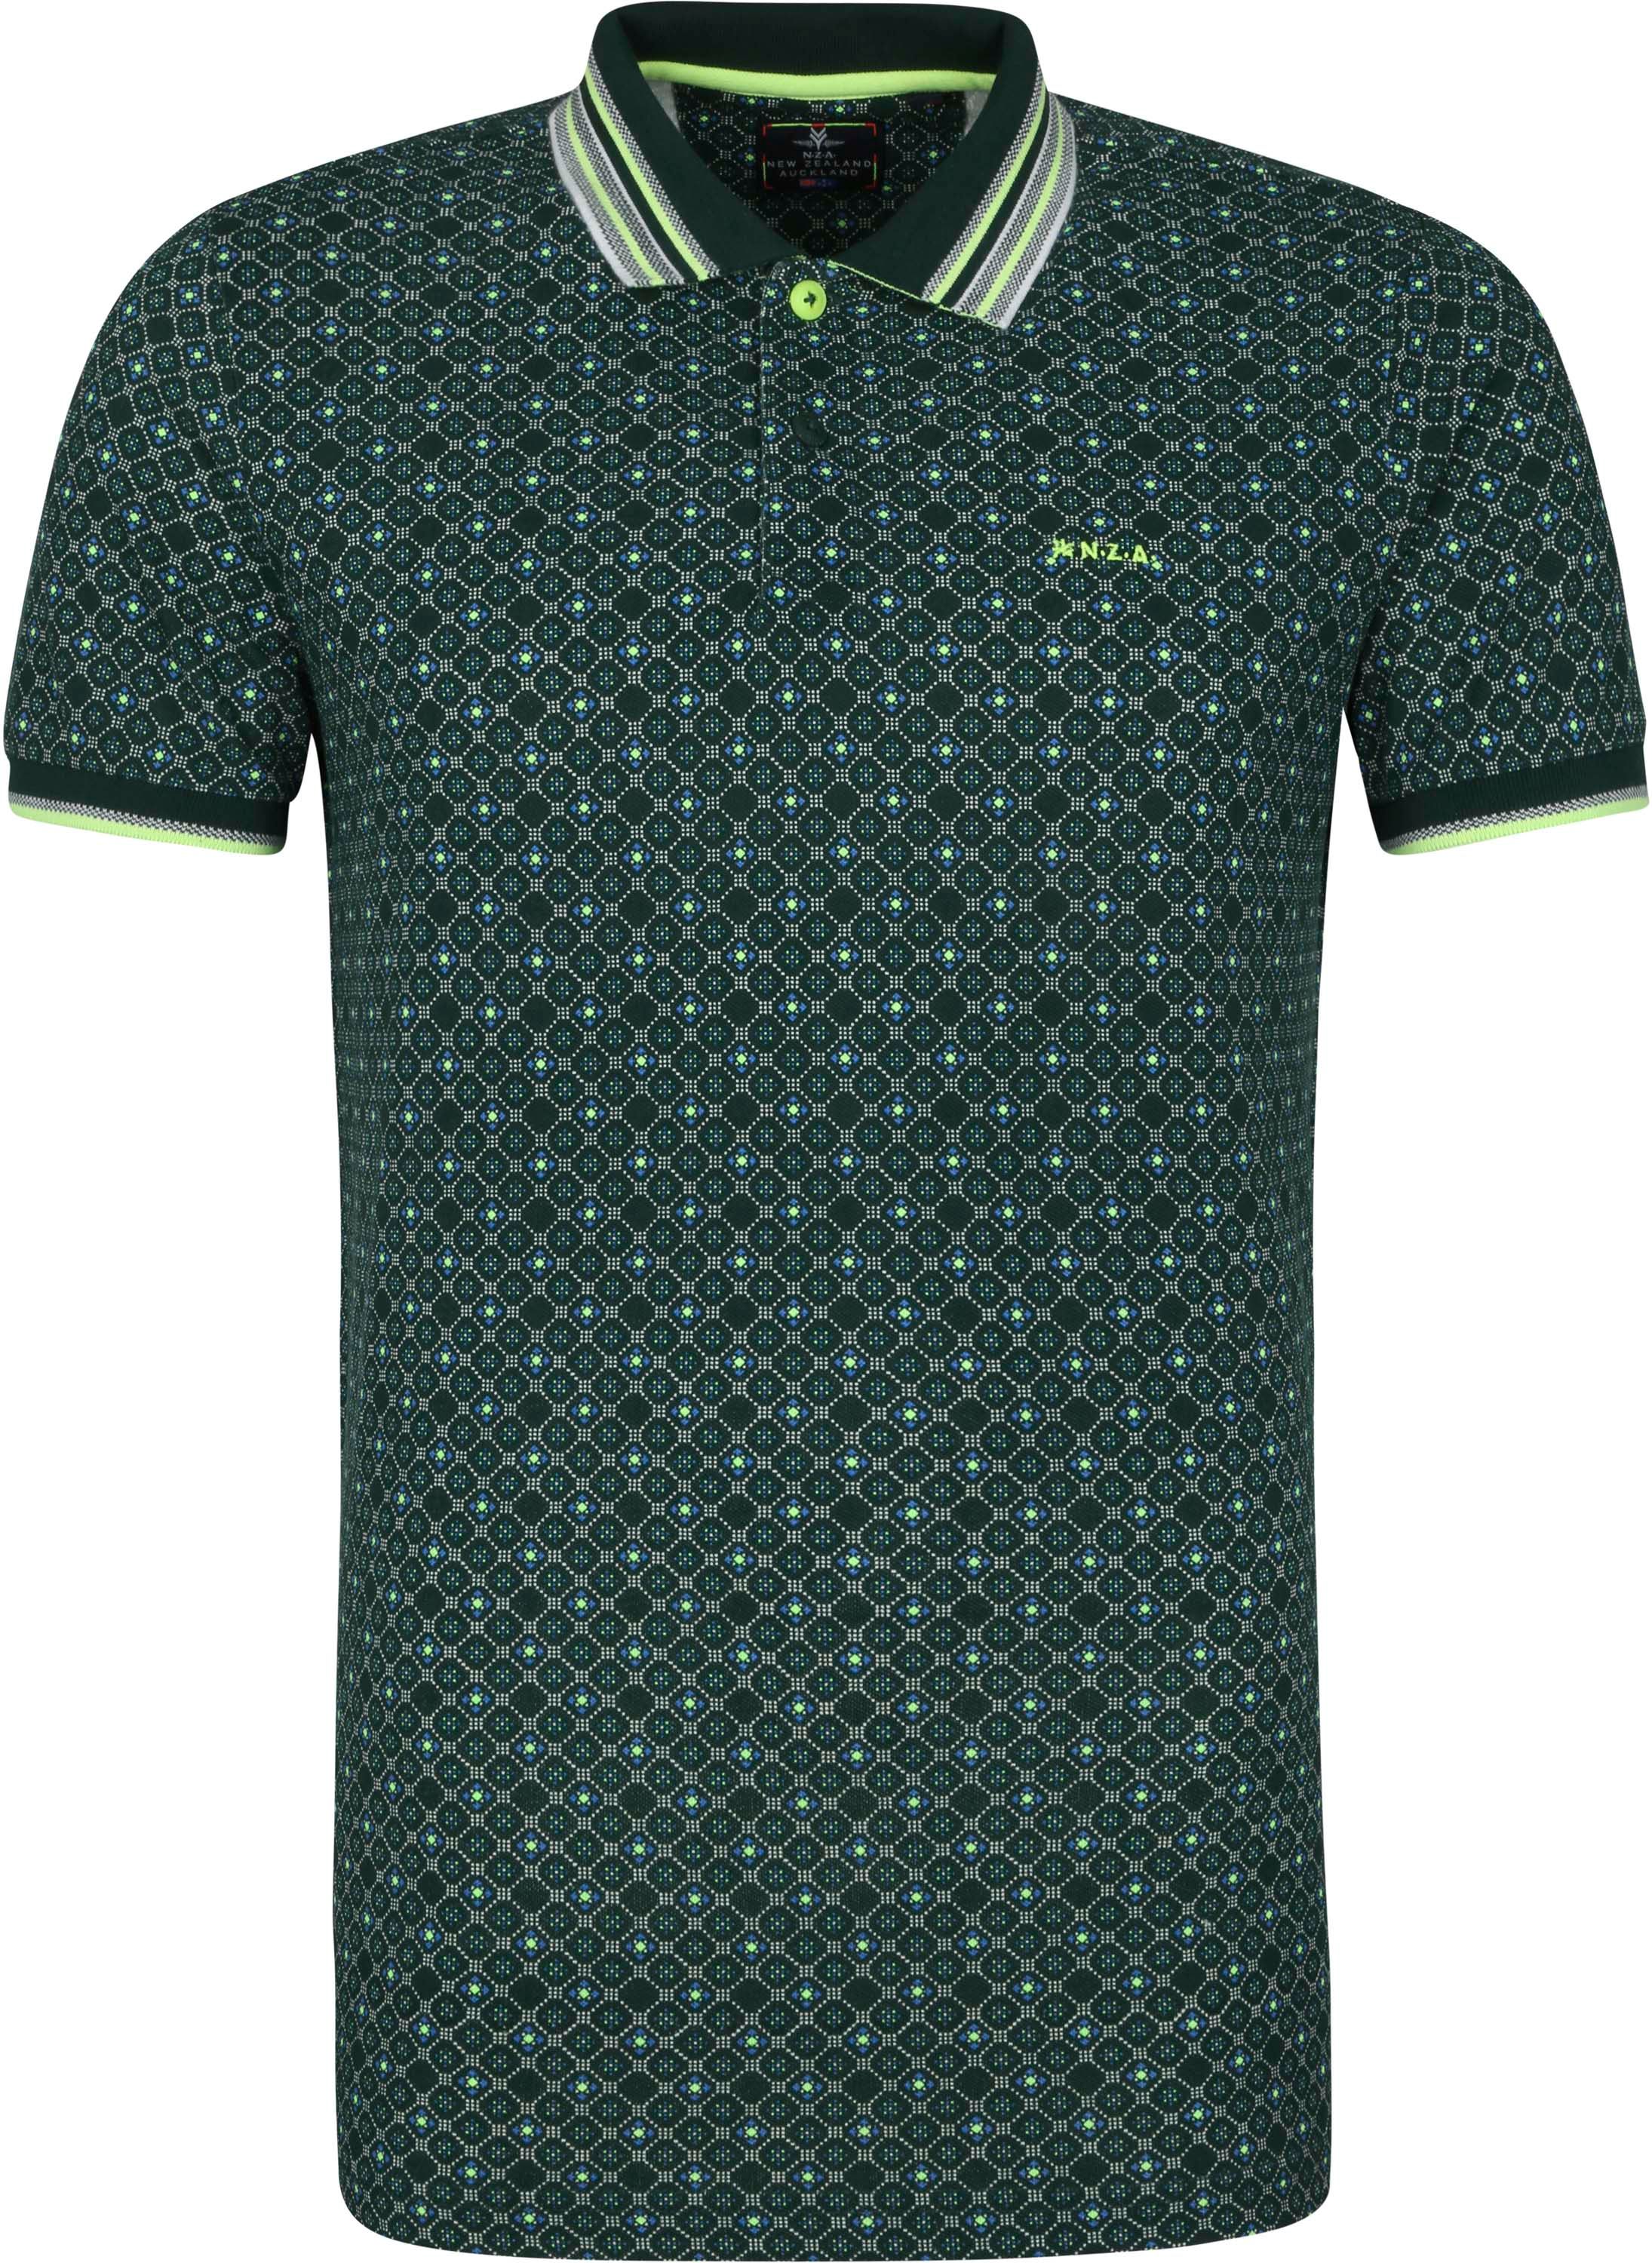 New Zealand Auckland - Nza polo shirt cobb reservoir dark green dark green size l